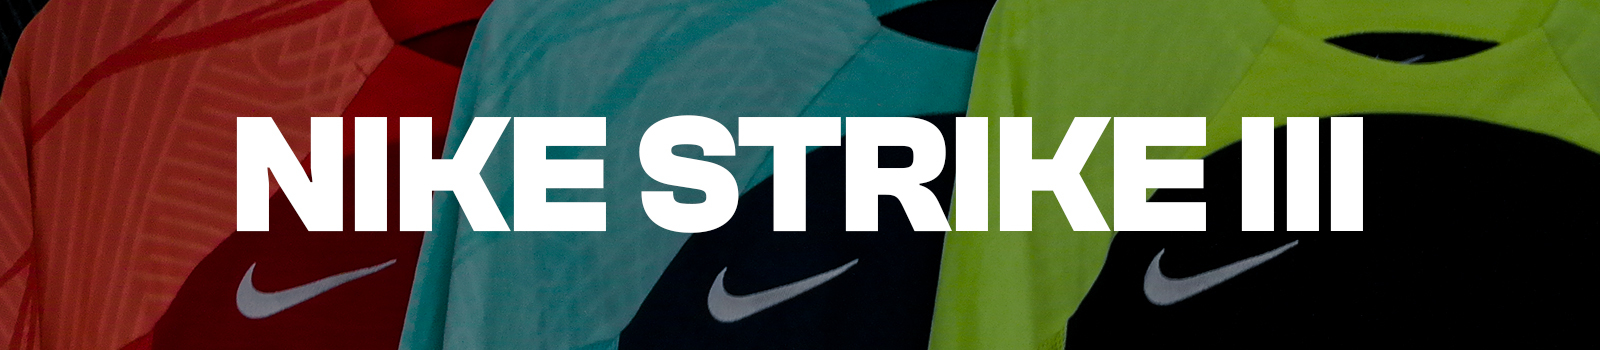 Nike Strike III